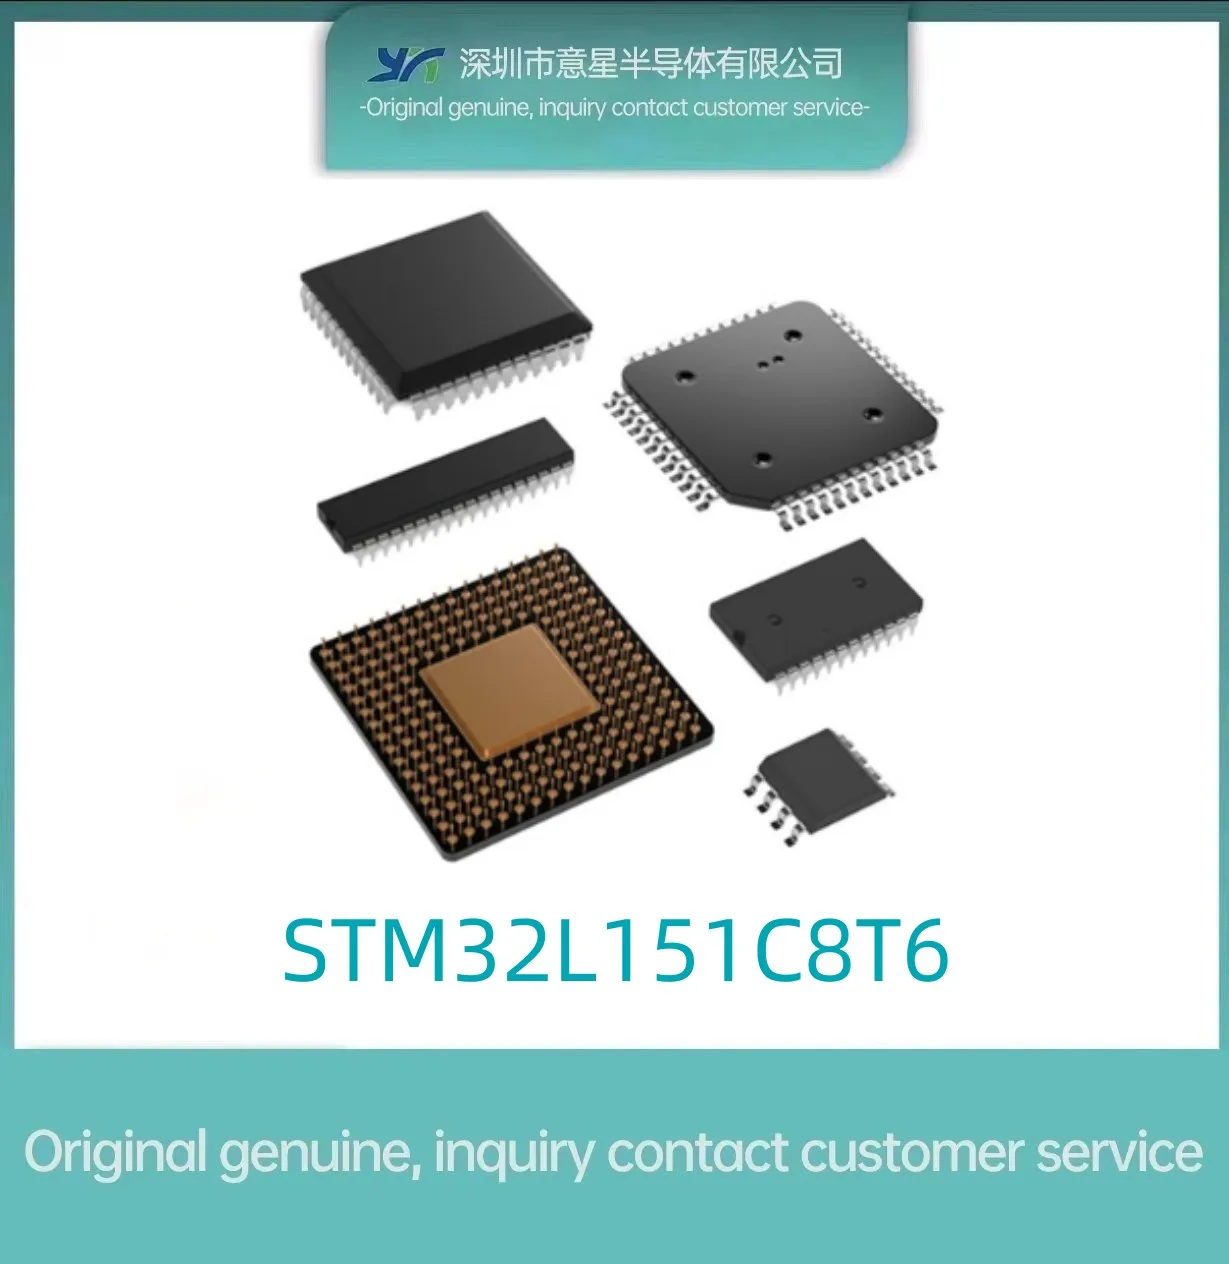 STM32L151C8T6 Комплект LQFP48 оригинальный инвентарь 151C8T6 микроконтроллер оригинальный оригинальный